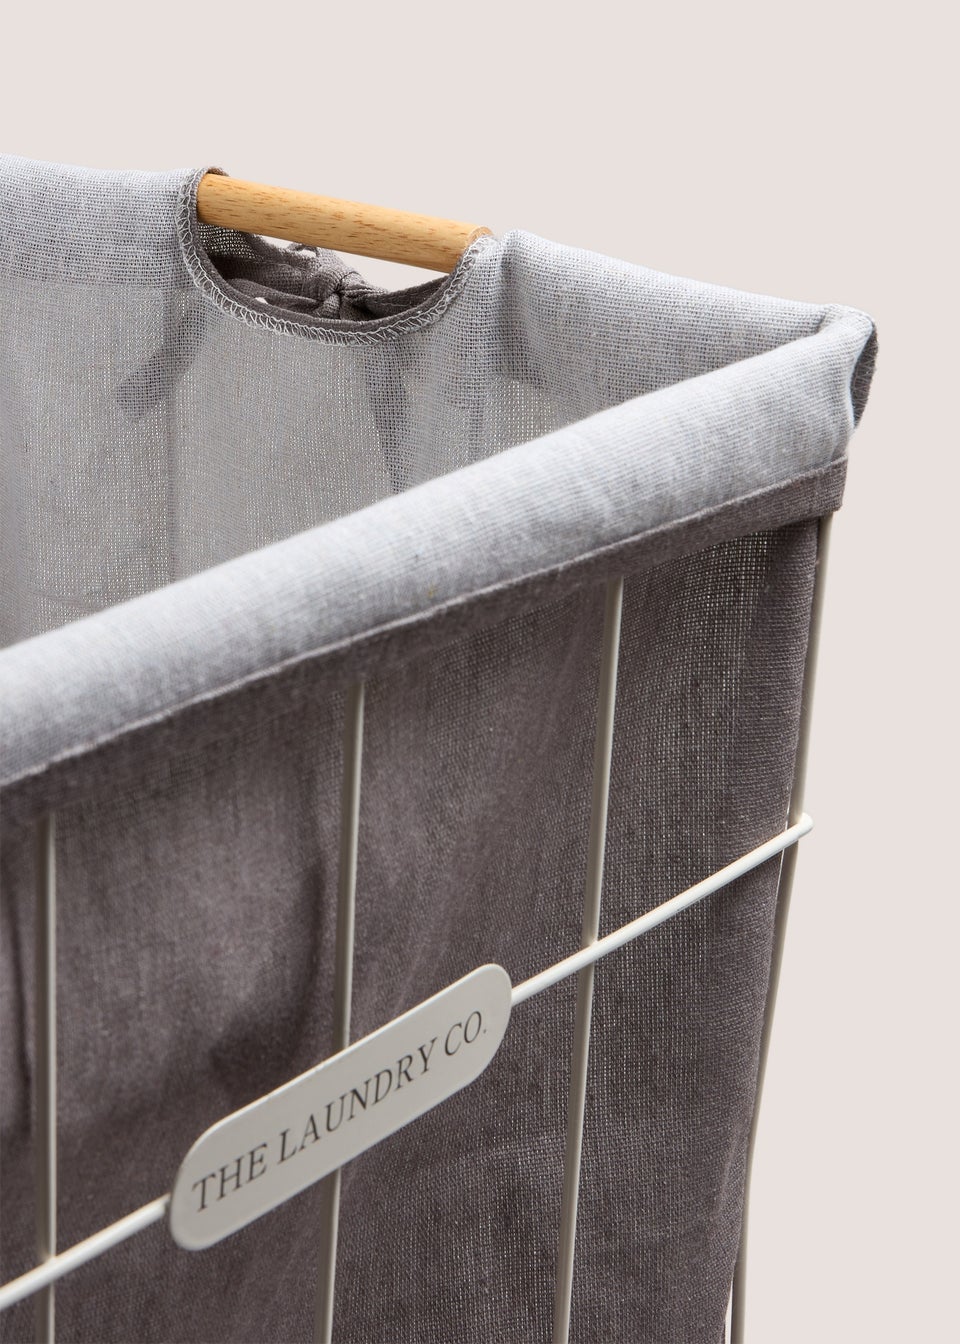 Laundry Co Grey Wire Frame Bag (54x38x38cm)